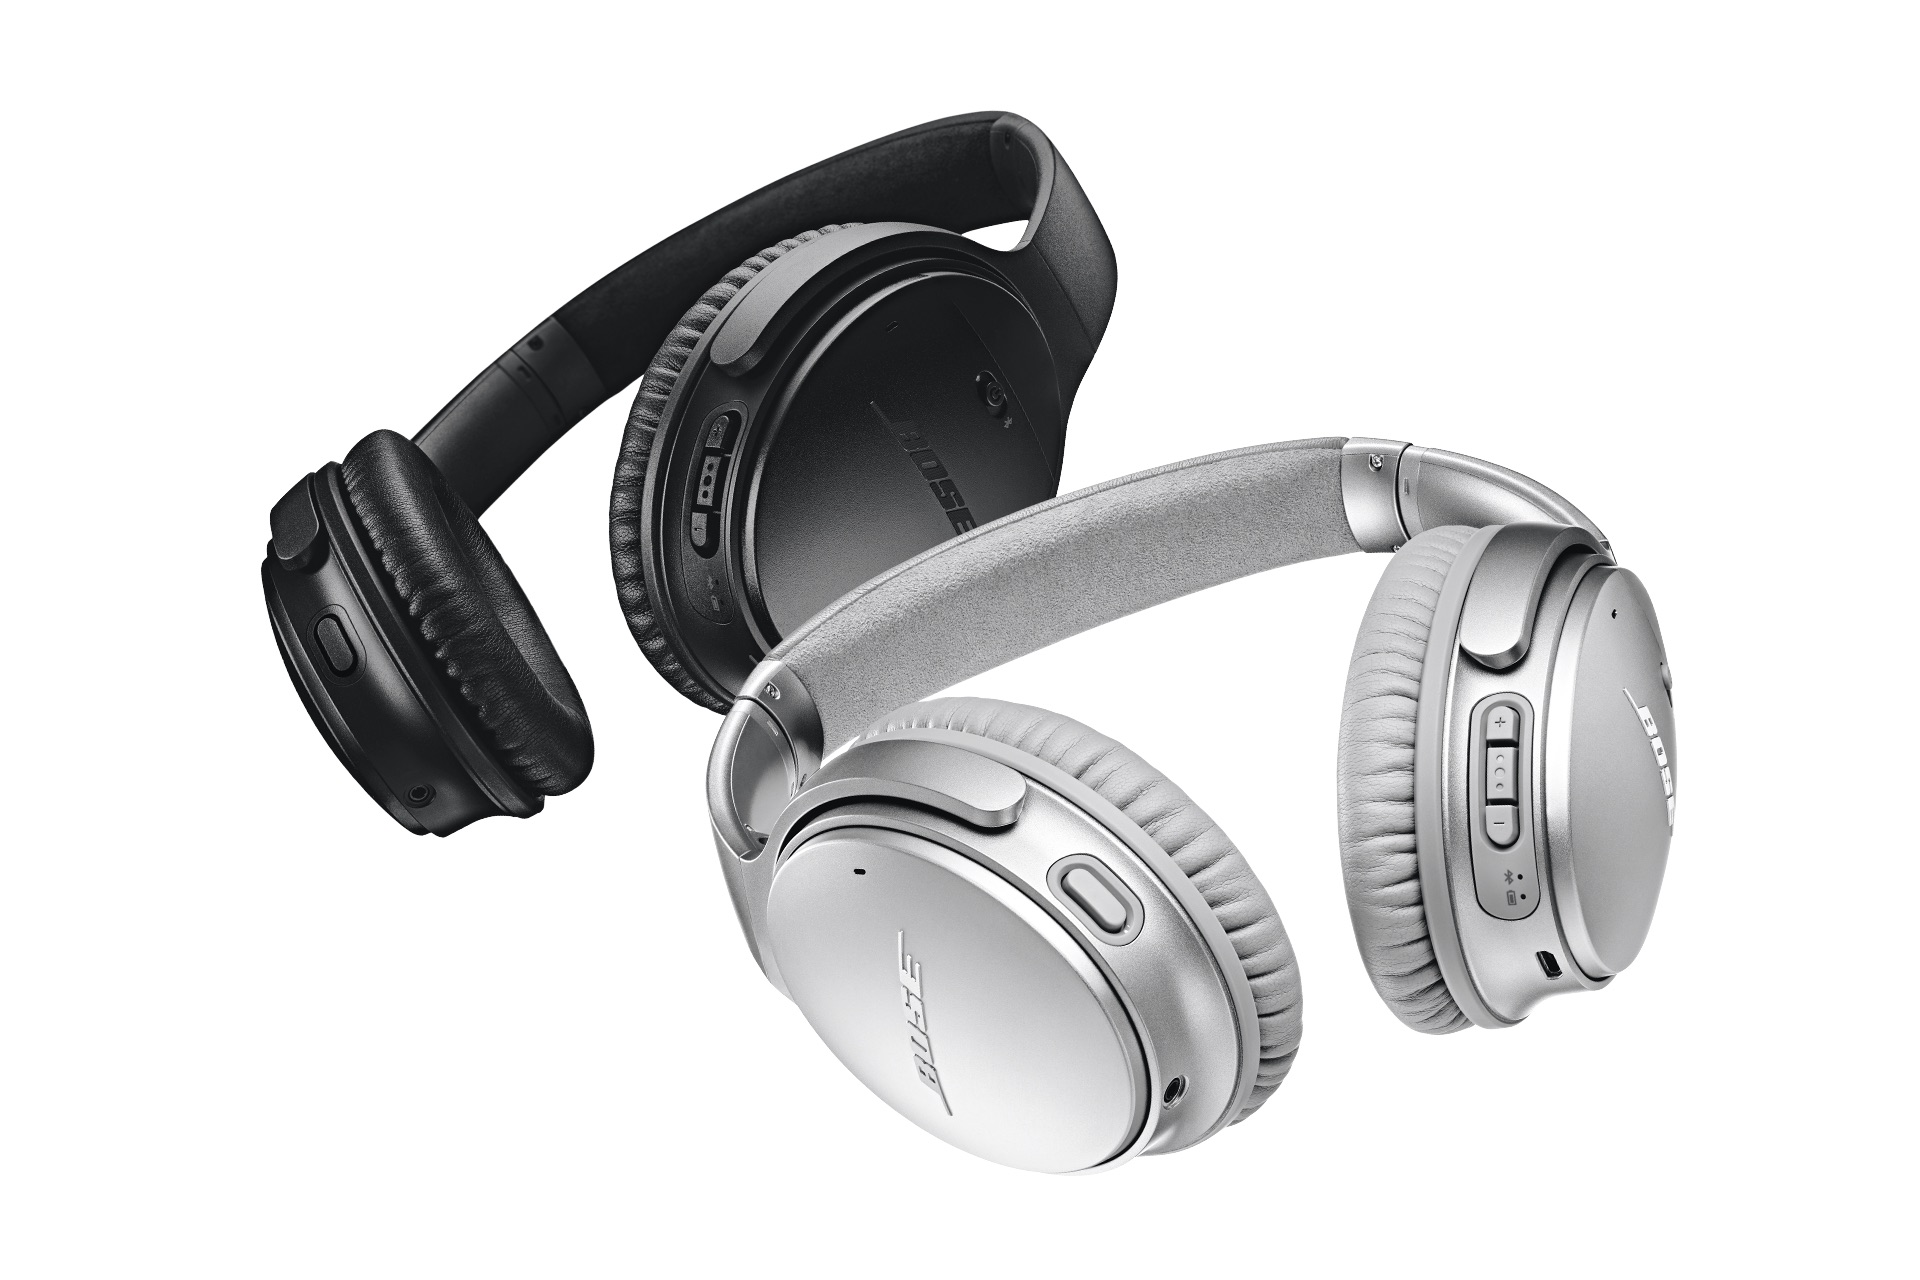 Identificeren Shipley Perfect Review: Bose QuietComfort 35 wireless headphones II - GadgetGear.nl